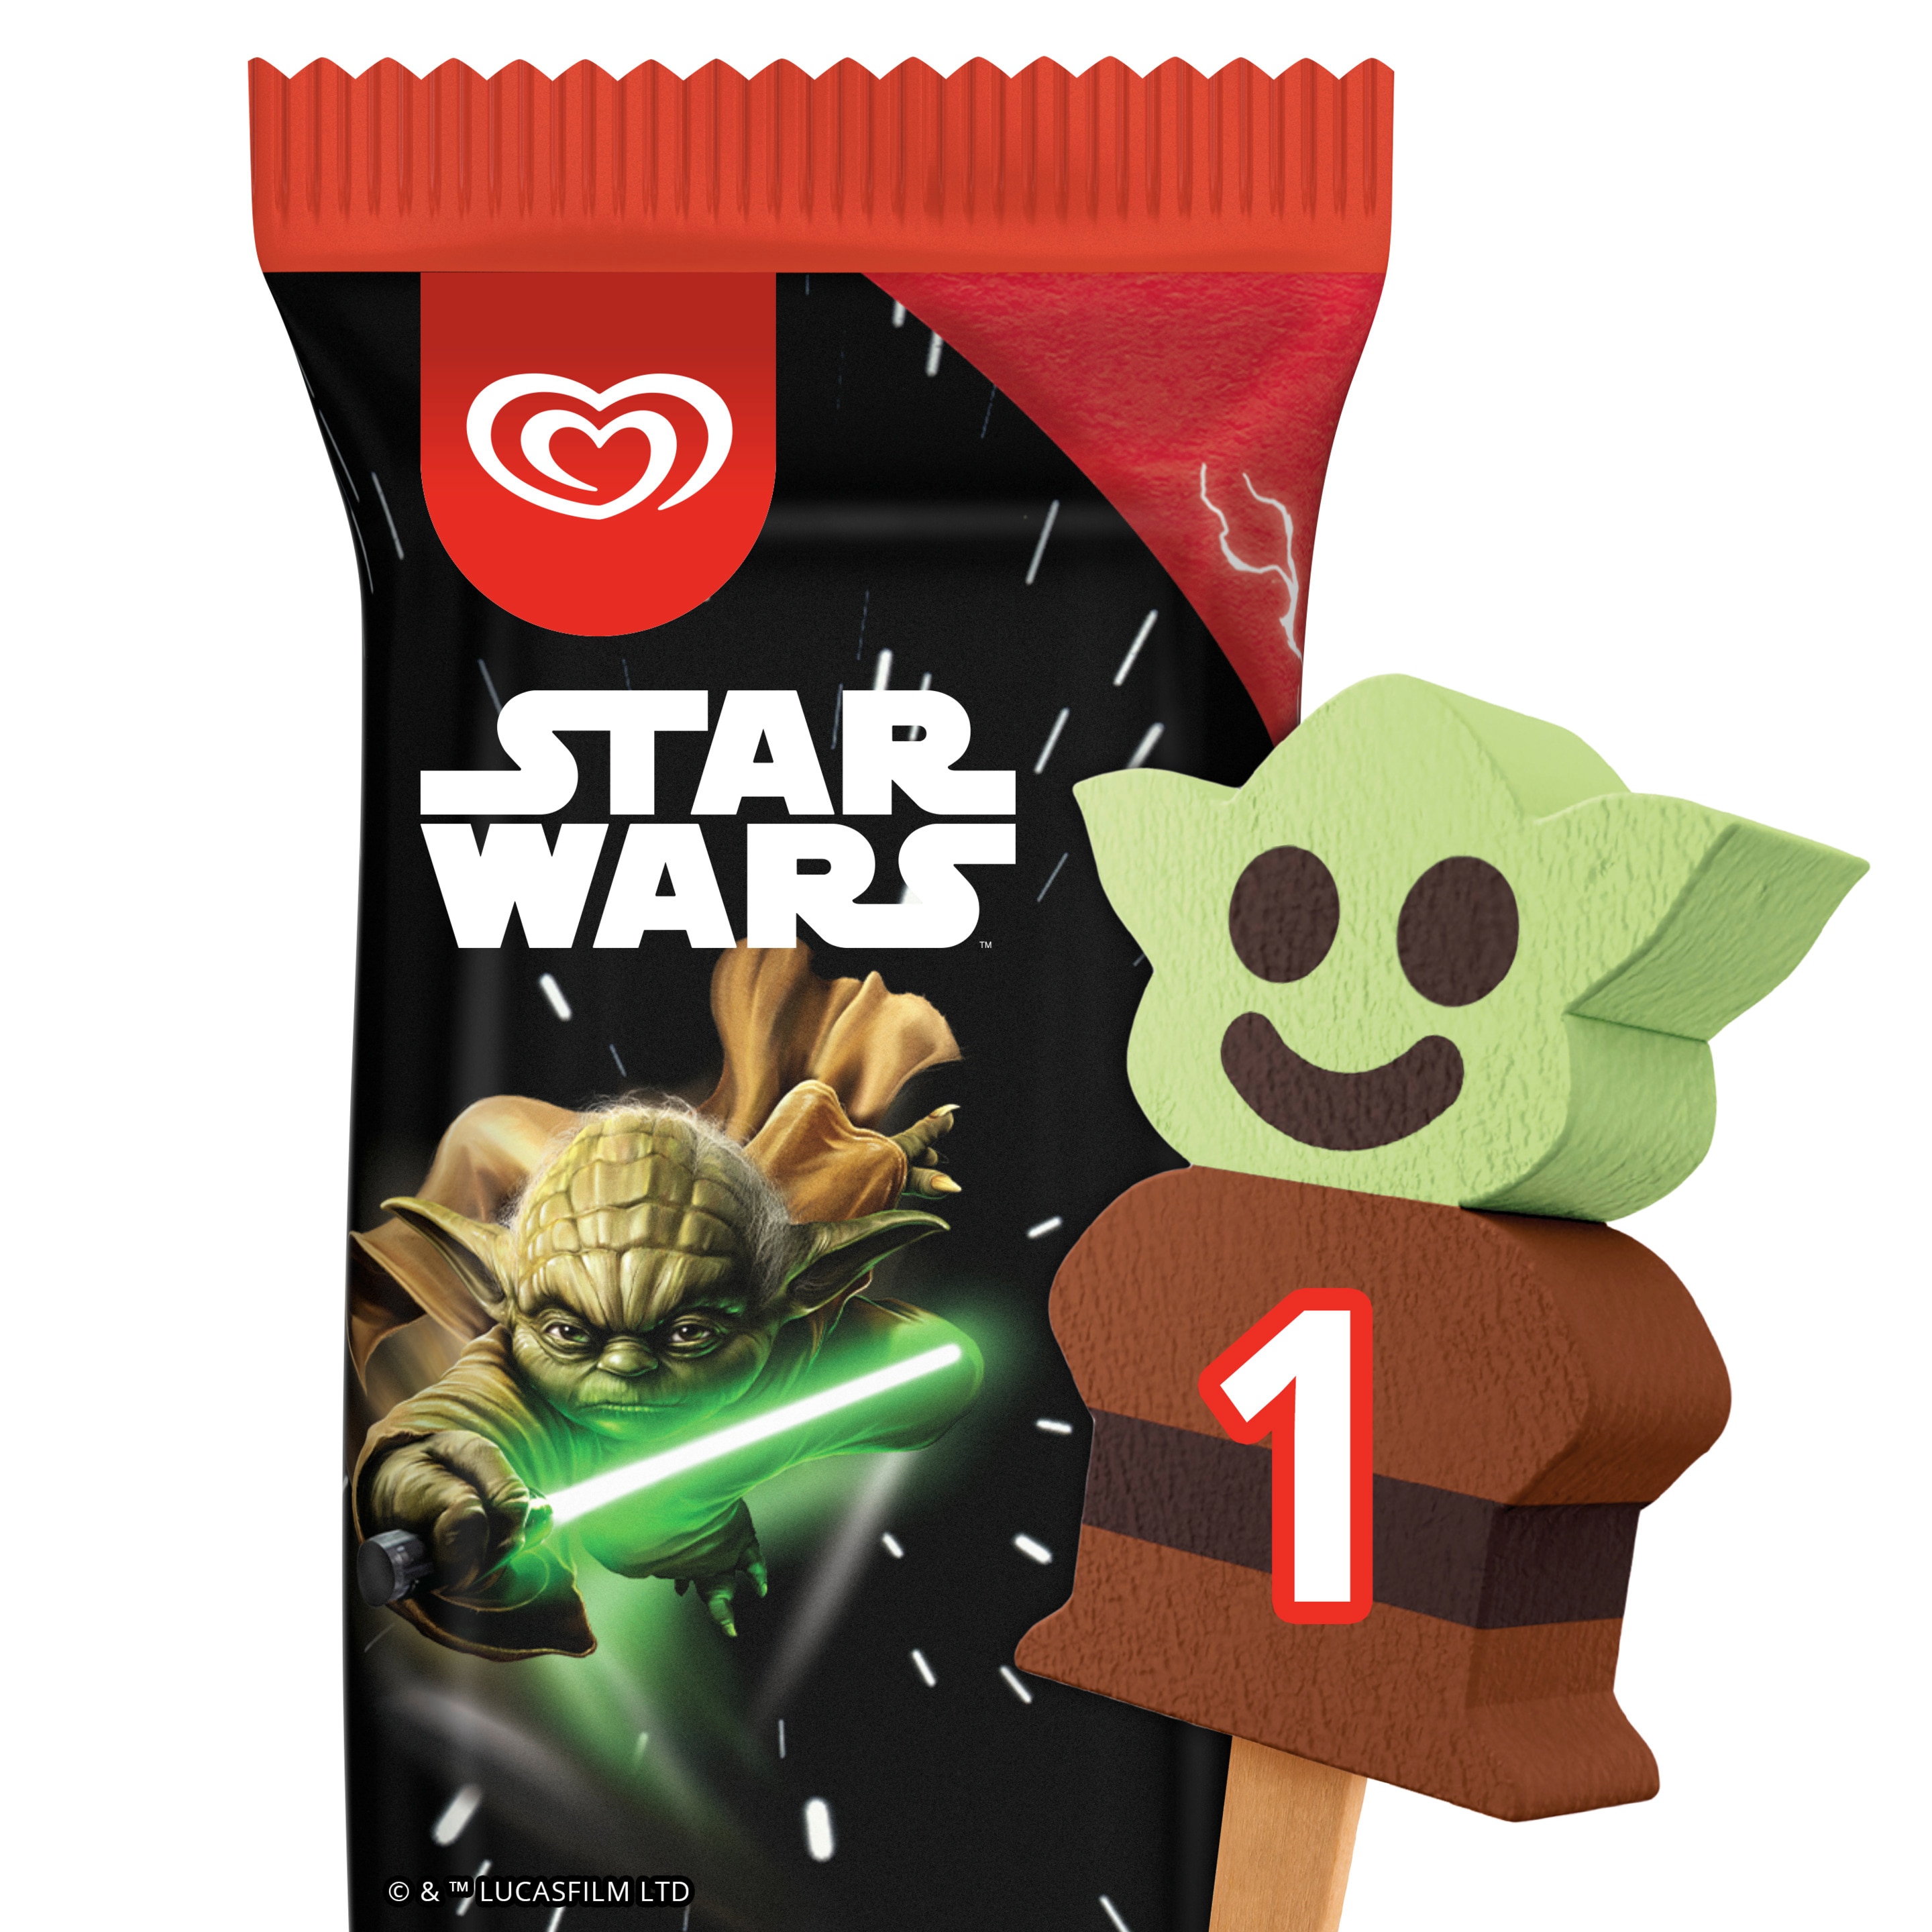 Star Wars Yoda Shaped Icecream